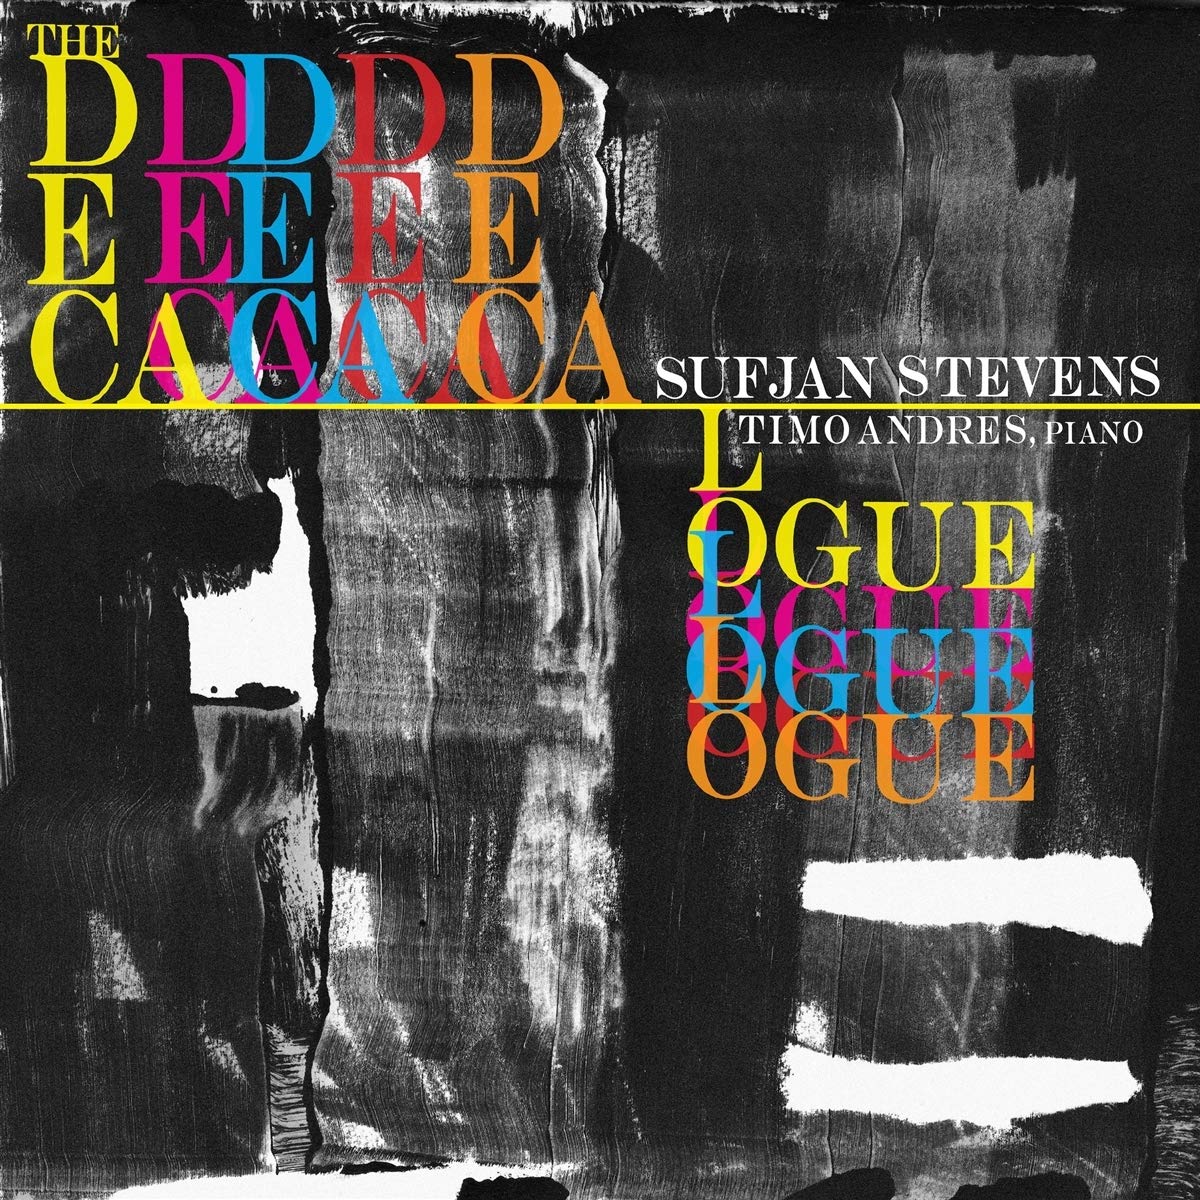 Sufjan Stevens - The Decalogue - CD